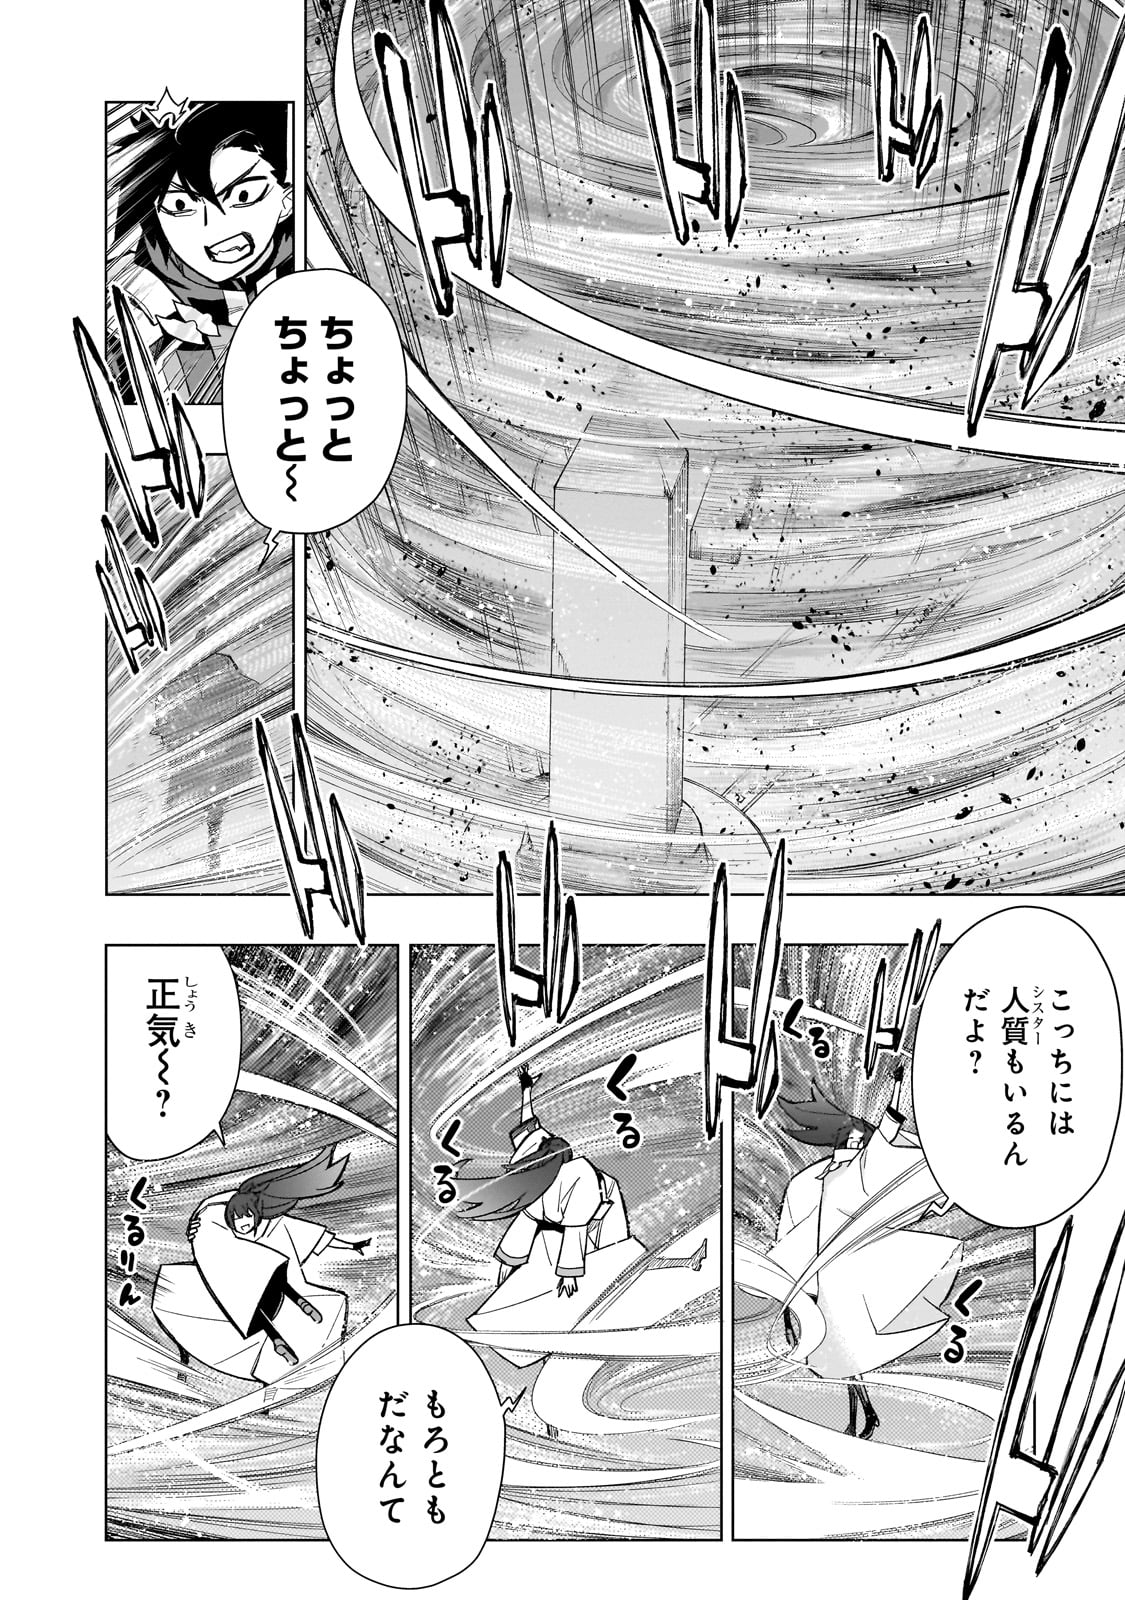 Kuro no Shoukanshi - Chapter 146 - Page 2